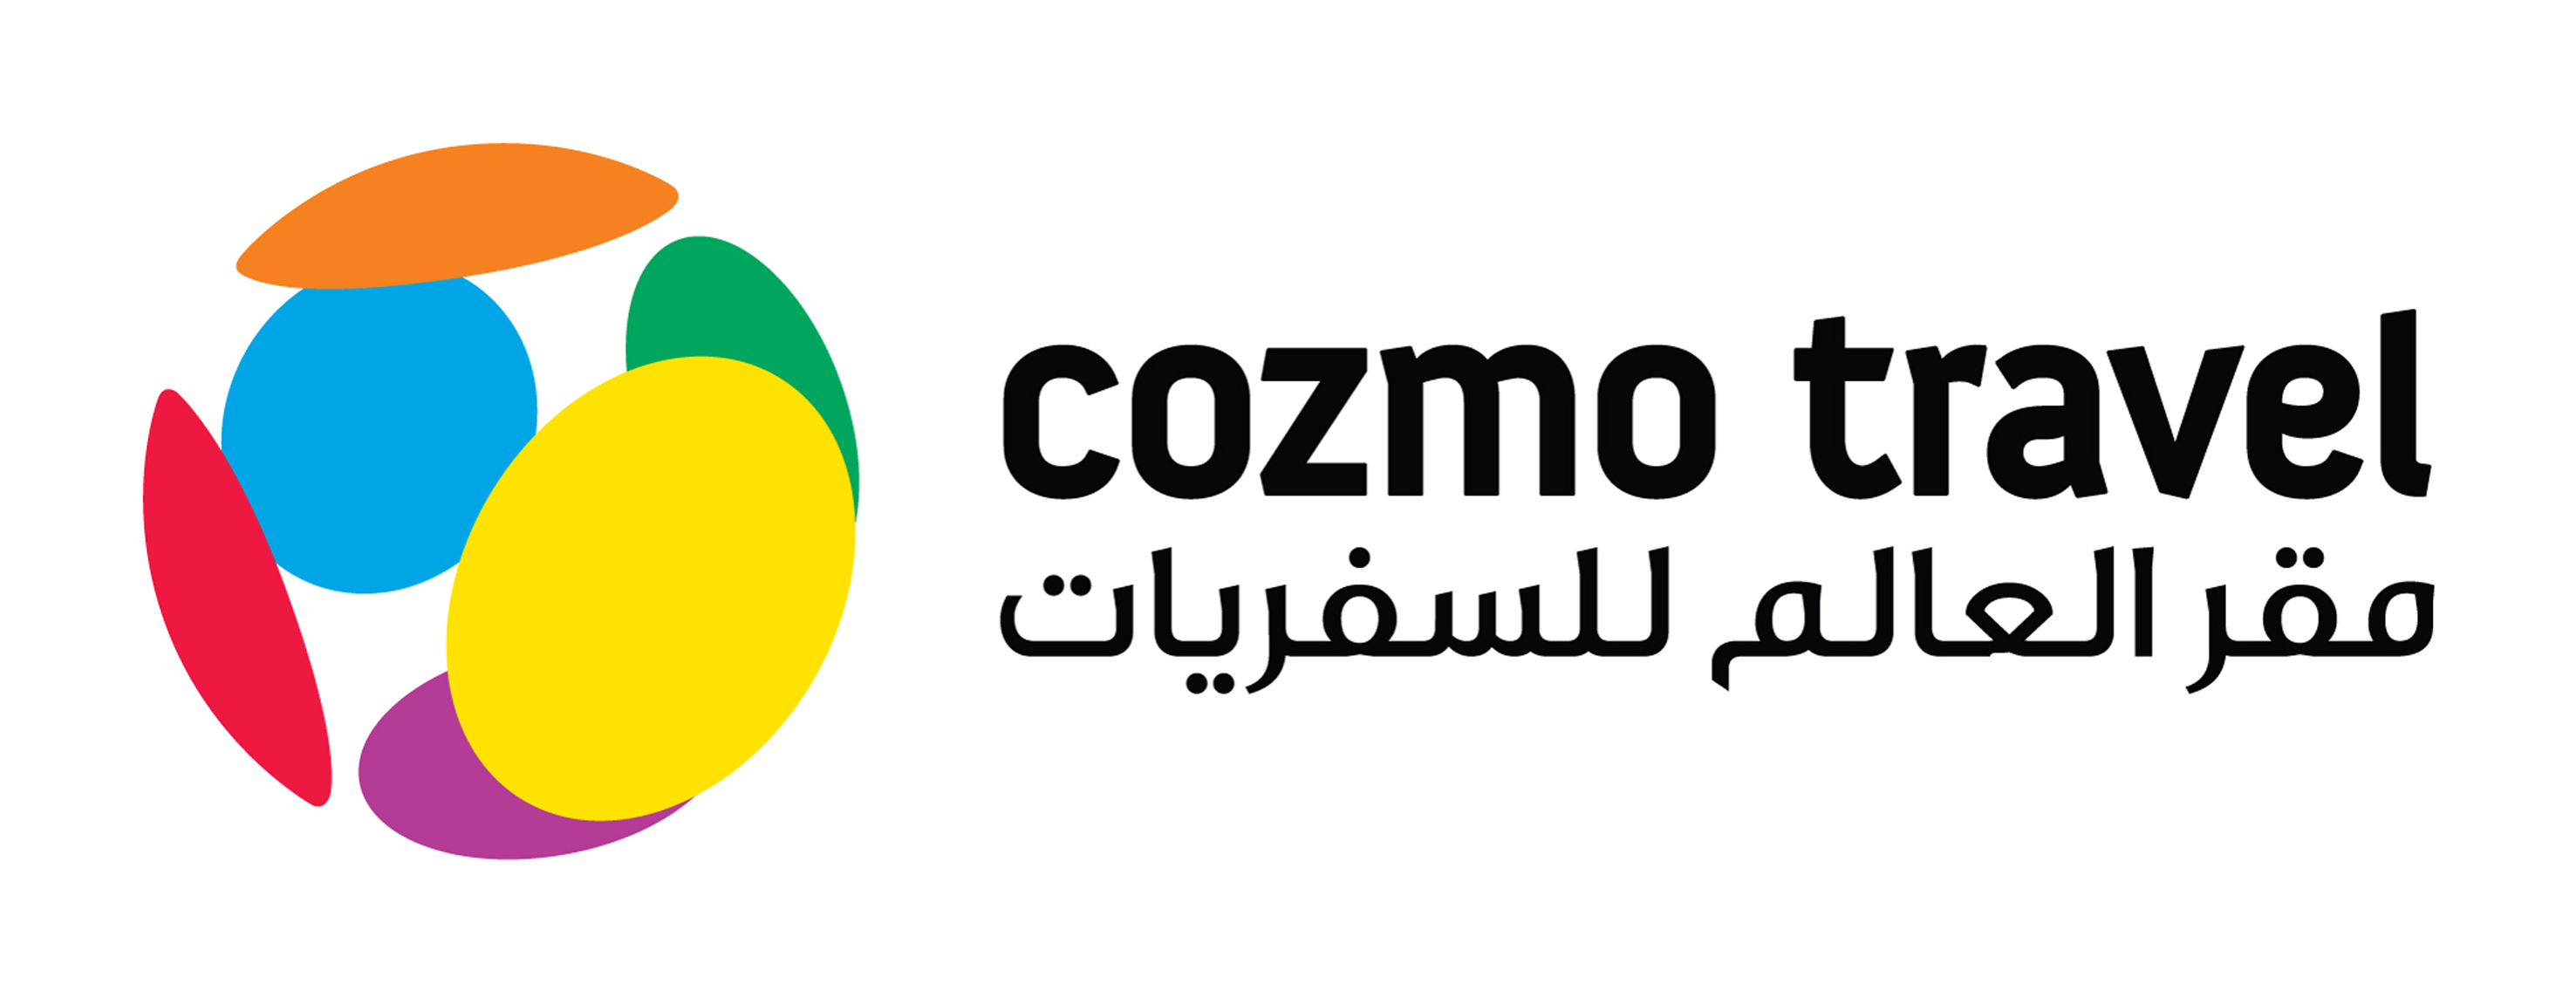 cozmo travel qatar